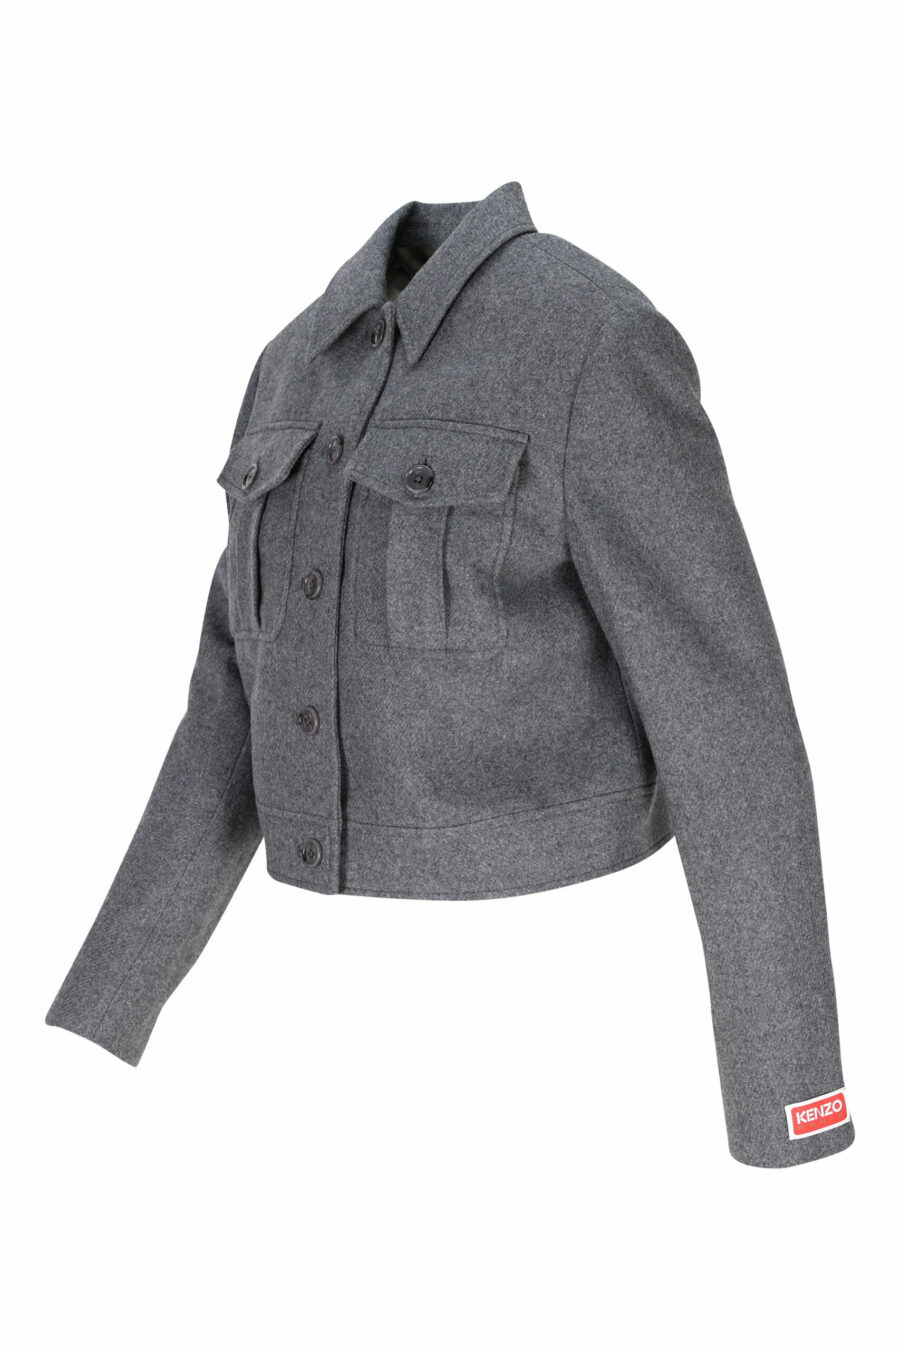 Grey jacket with mini-logo on sleeve - 3612230490567 1 scaled